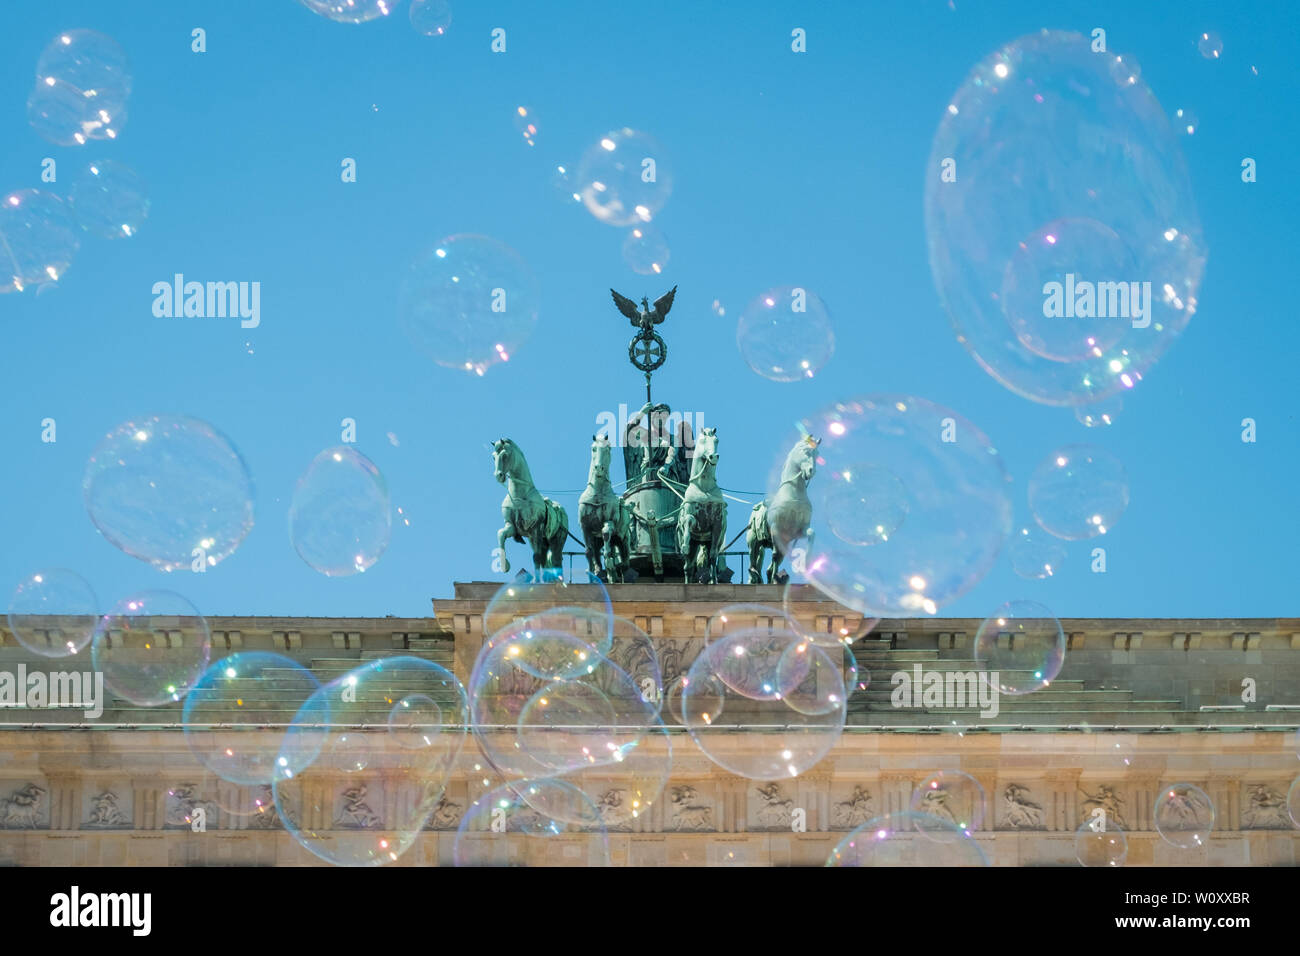 Puerta de Brandenburgo / Brandenburger Tor en día soleado con cielo azul y burbujas de jabón. Foto de stock